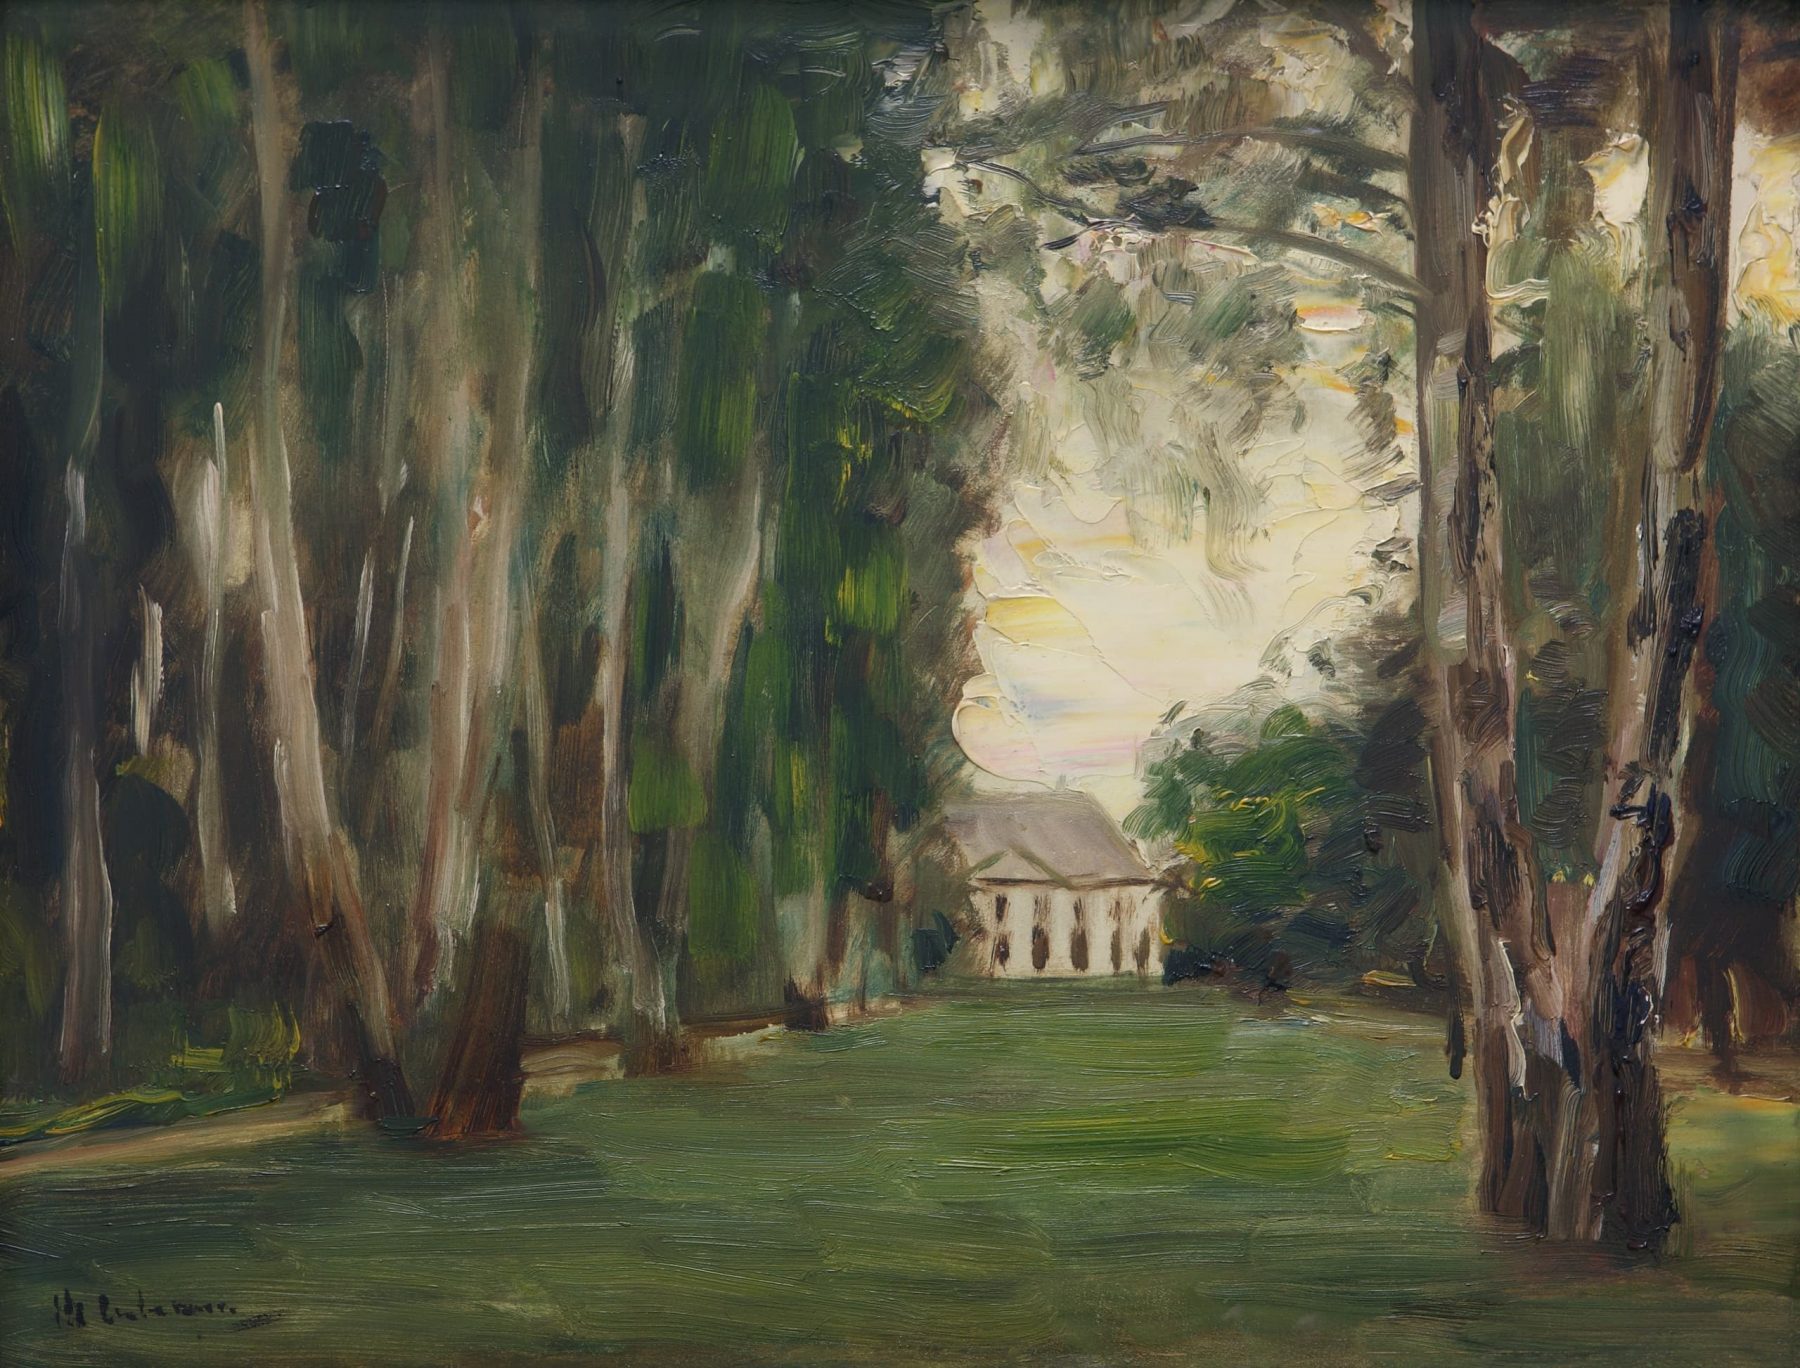 Gemälde von Max Liebermann mit Bäumen links und rechts und der Liebermann-Villa im Hintergrund